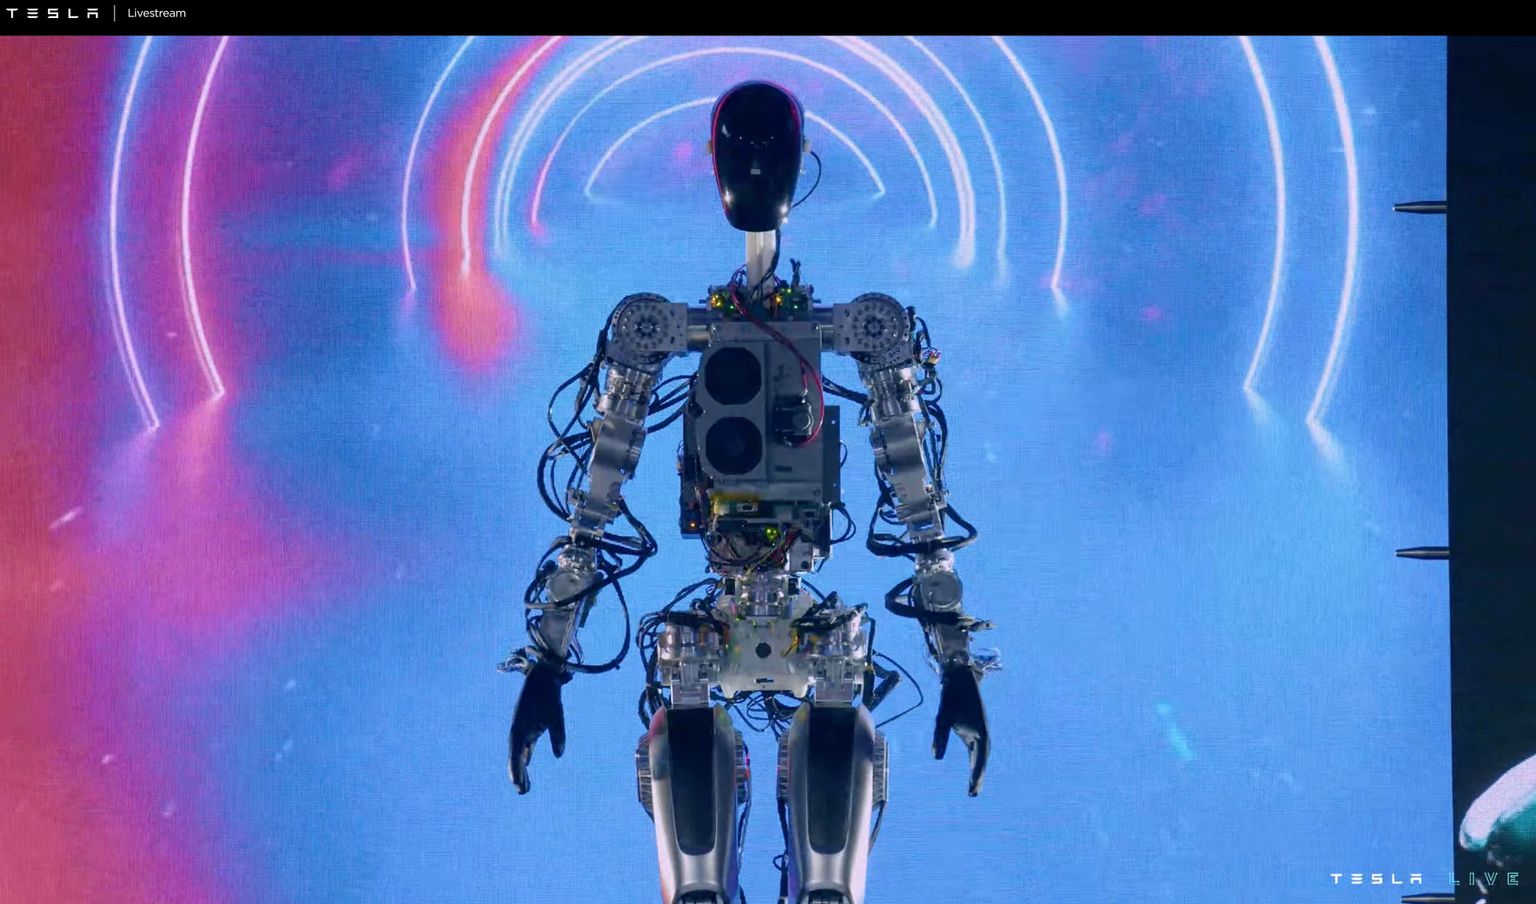 Tesla humanoid robot.